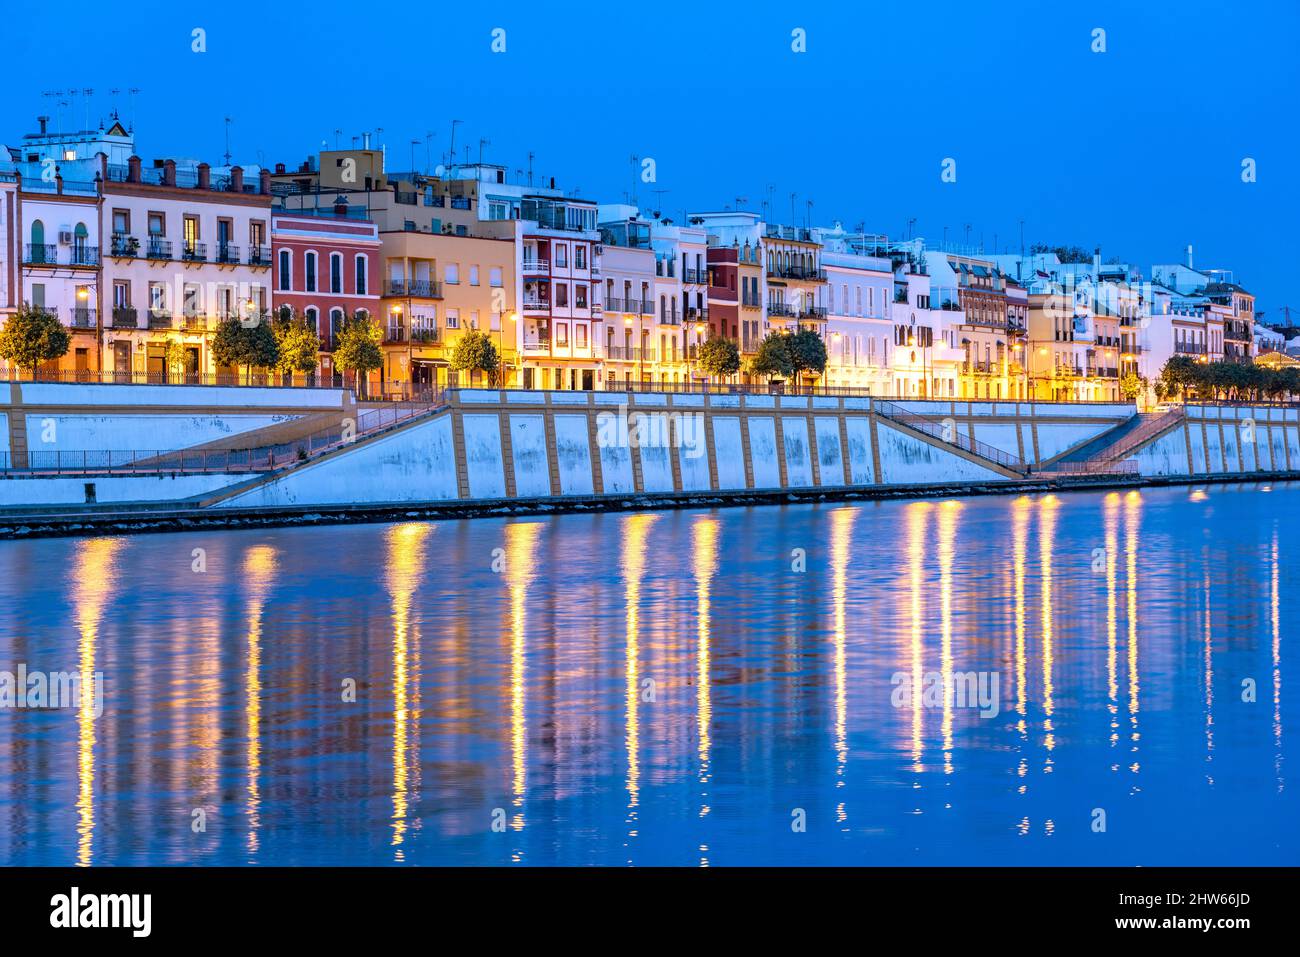 Stadtviertel Triana am Ufer des Flusses Guadalquivir in der Abenddämmerung, Sevilla, Andalusien, Spanien | Triana-Viertel am Guadalquivir b Stockfoto